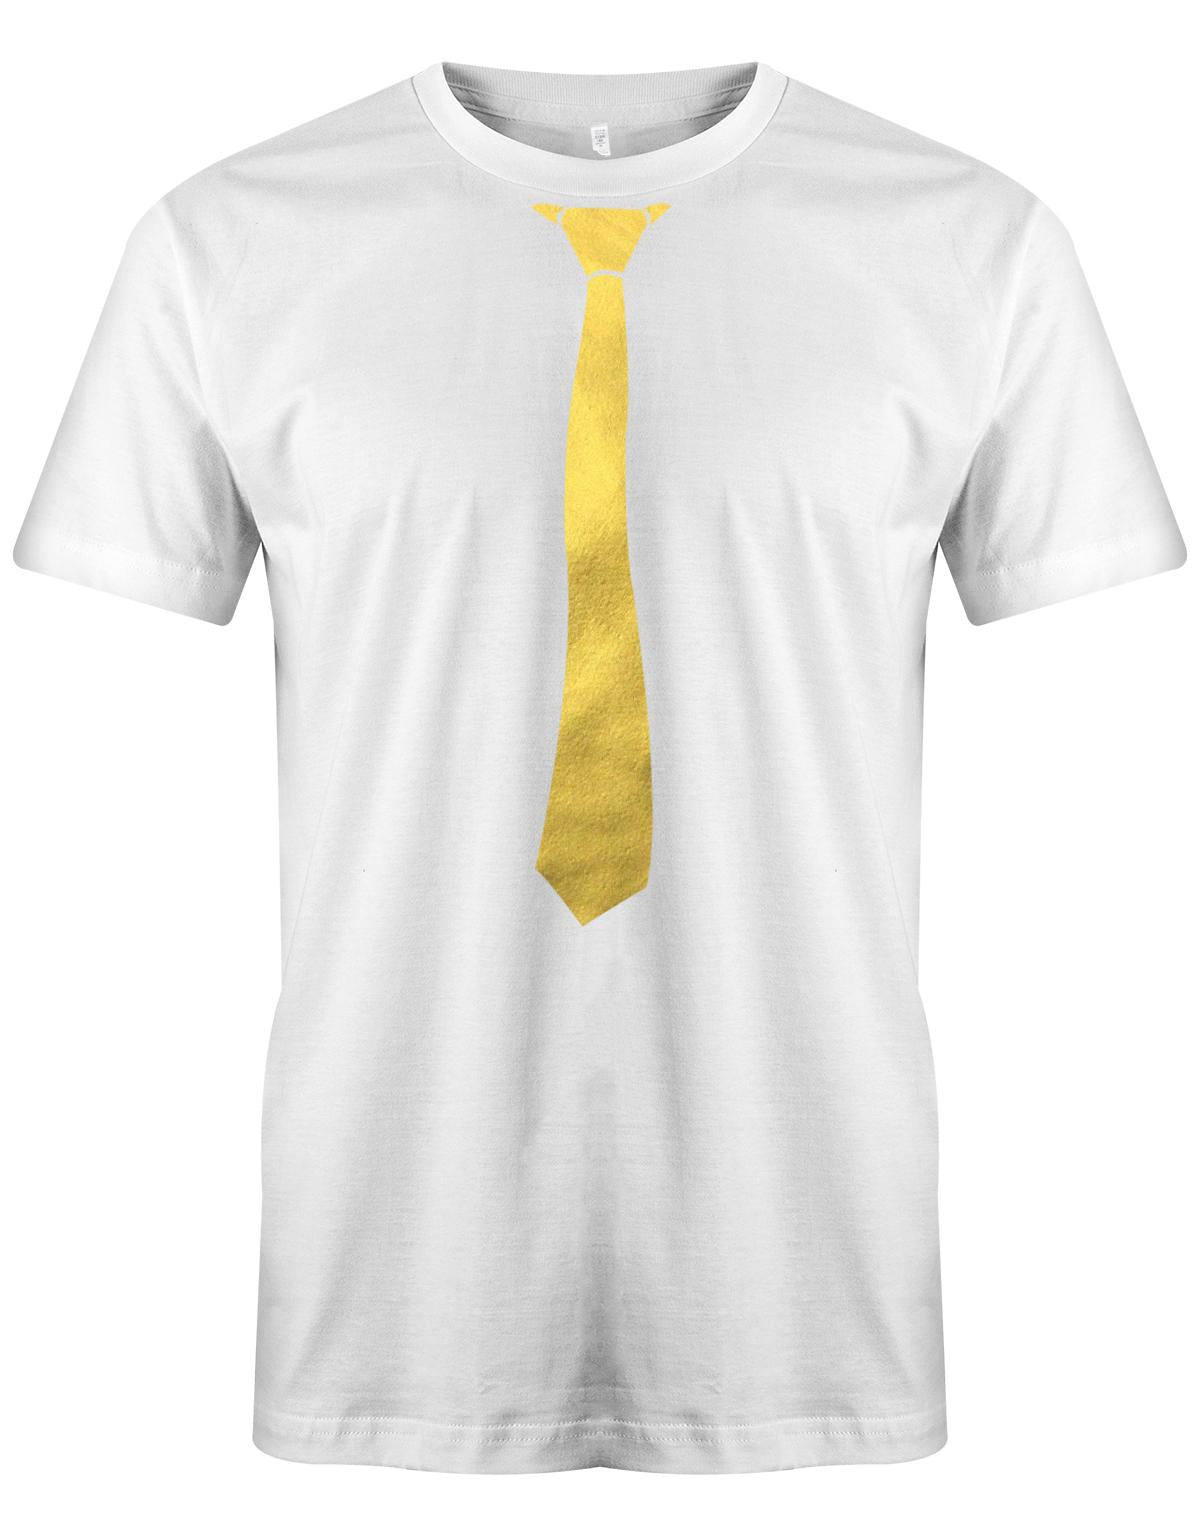 Krawatte-Sportlich-Herren-Shirt-JGA-Weiss-Gold